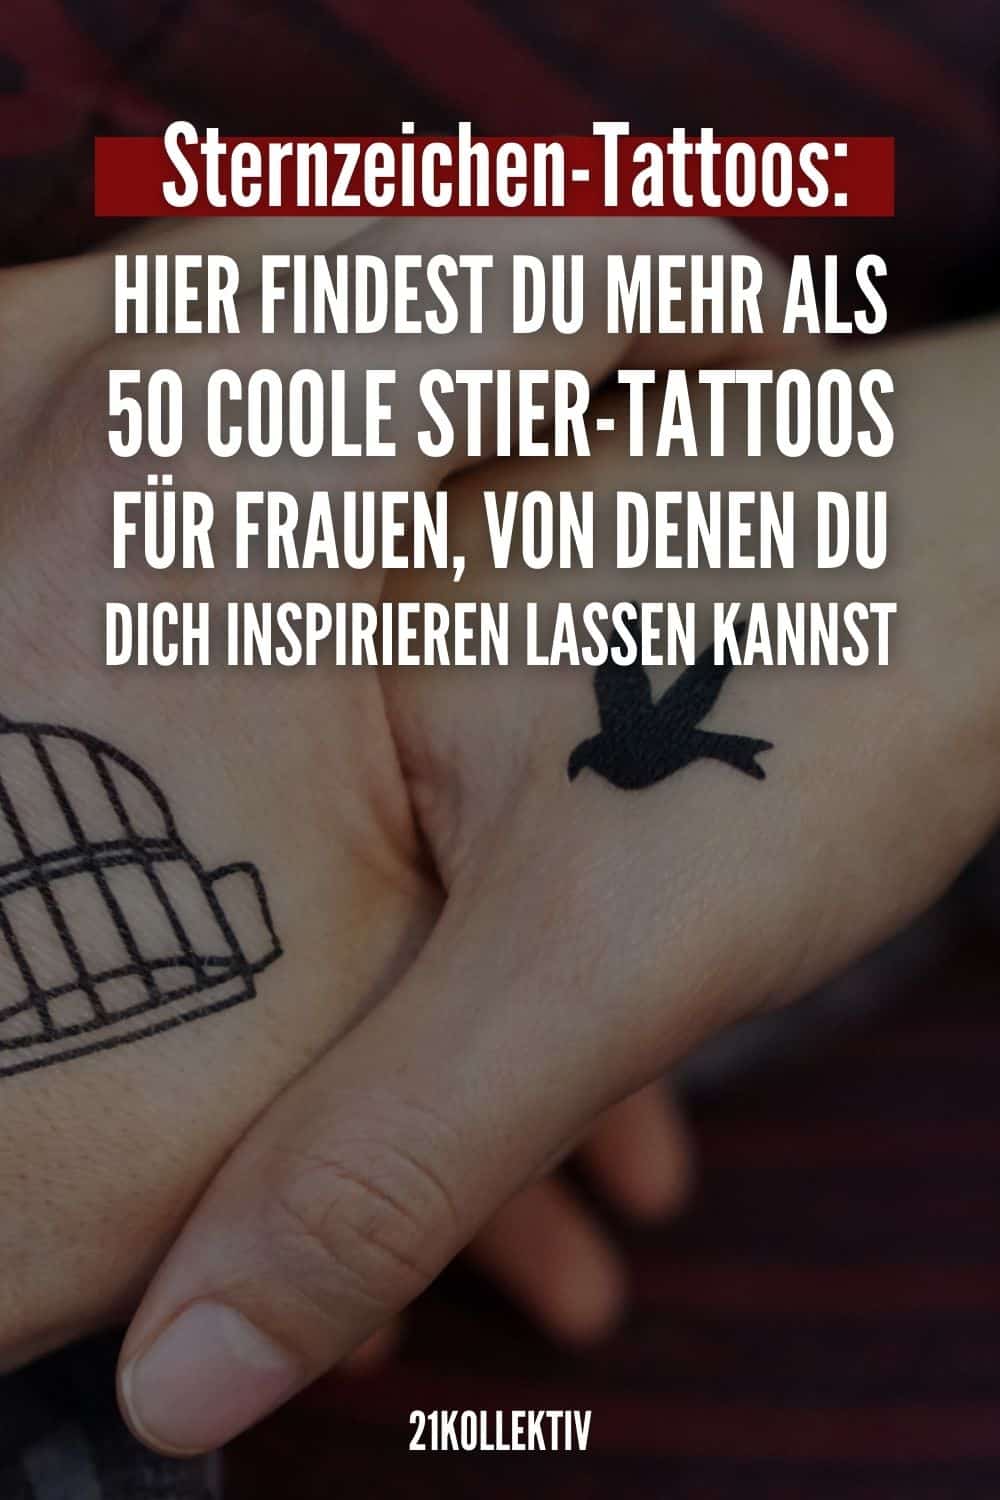 Sternzeichen-Tattoos: Hier findest du mehr als 50 coole Stier-Tattoos für Frauen, von denen du dich inspirieren lassen kannst